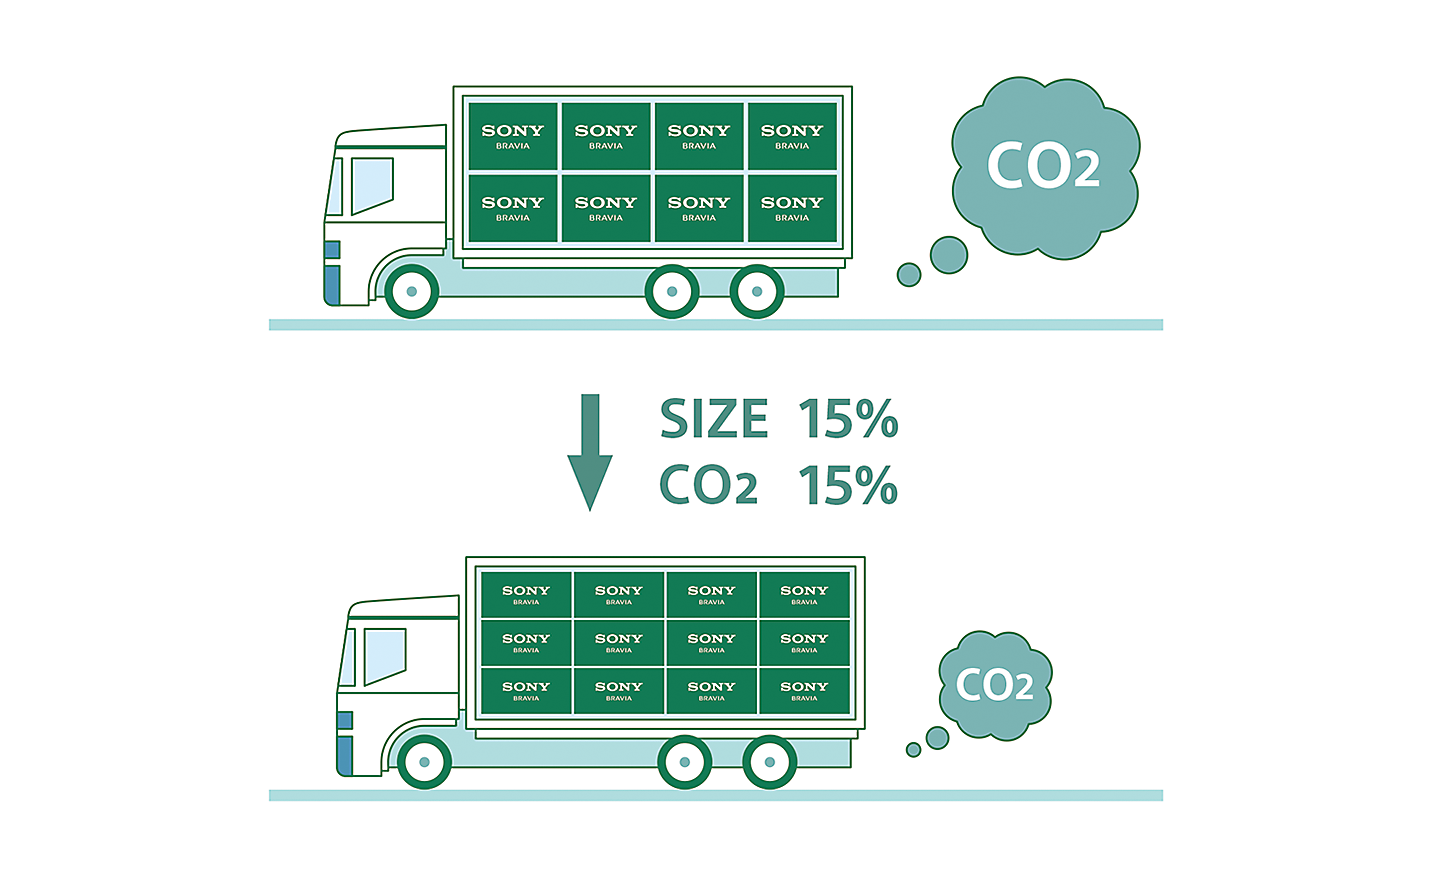 Immagine di due camion che illustra come la riduzione degli imballaggi aiuta a diminuire le emissioni di CO2 prodotte durante il trasporto